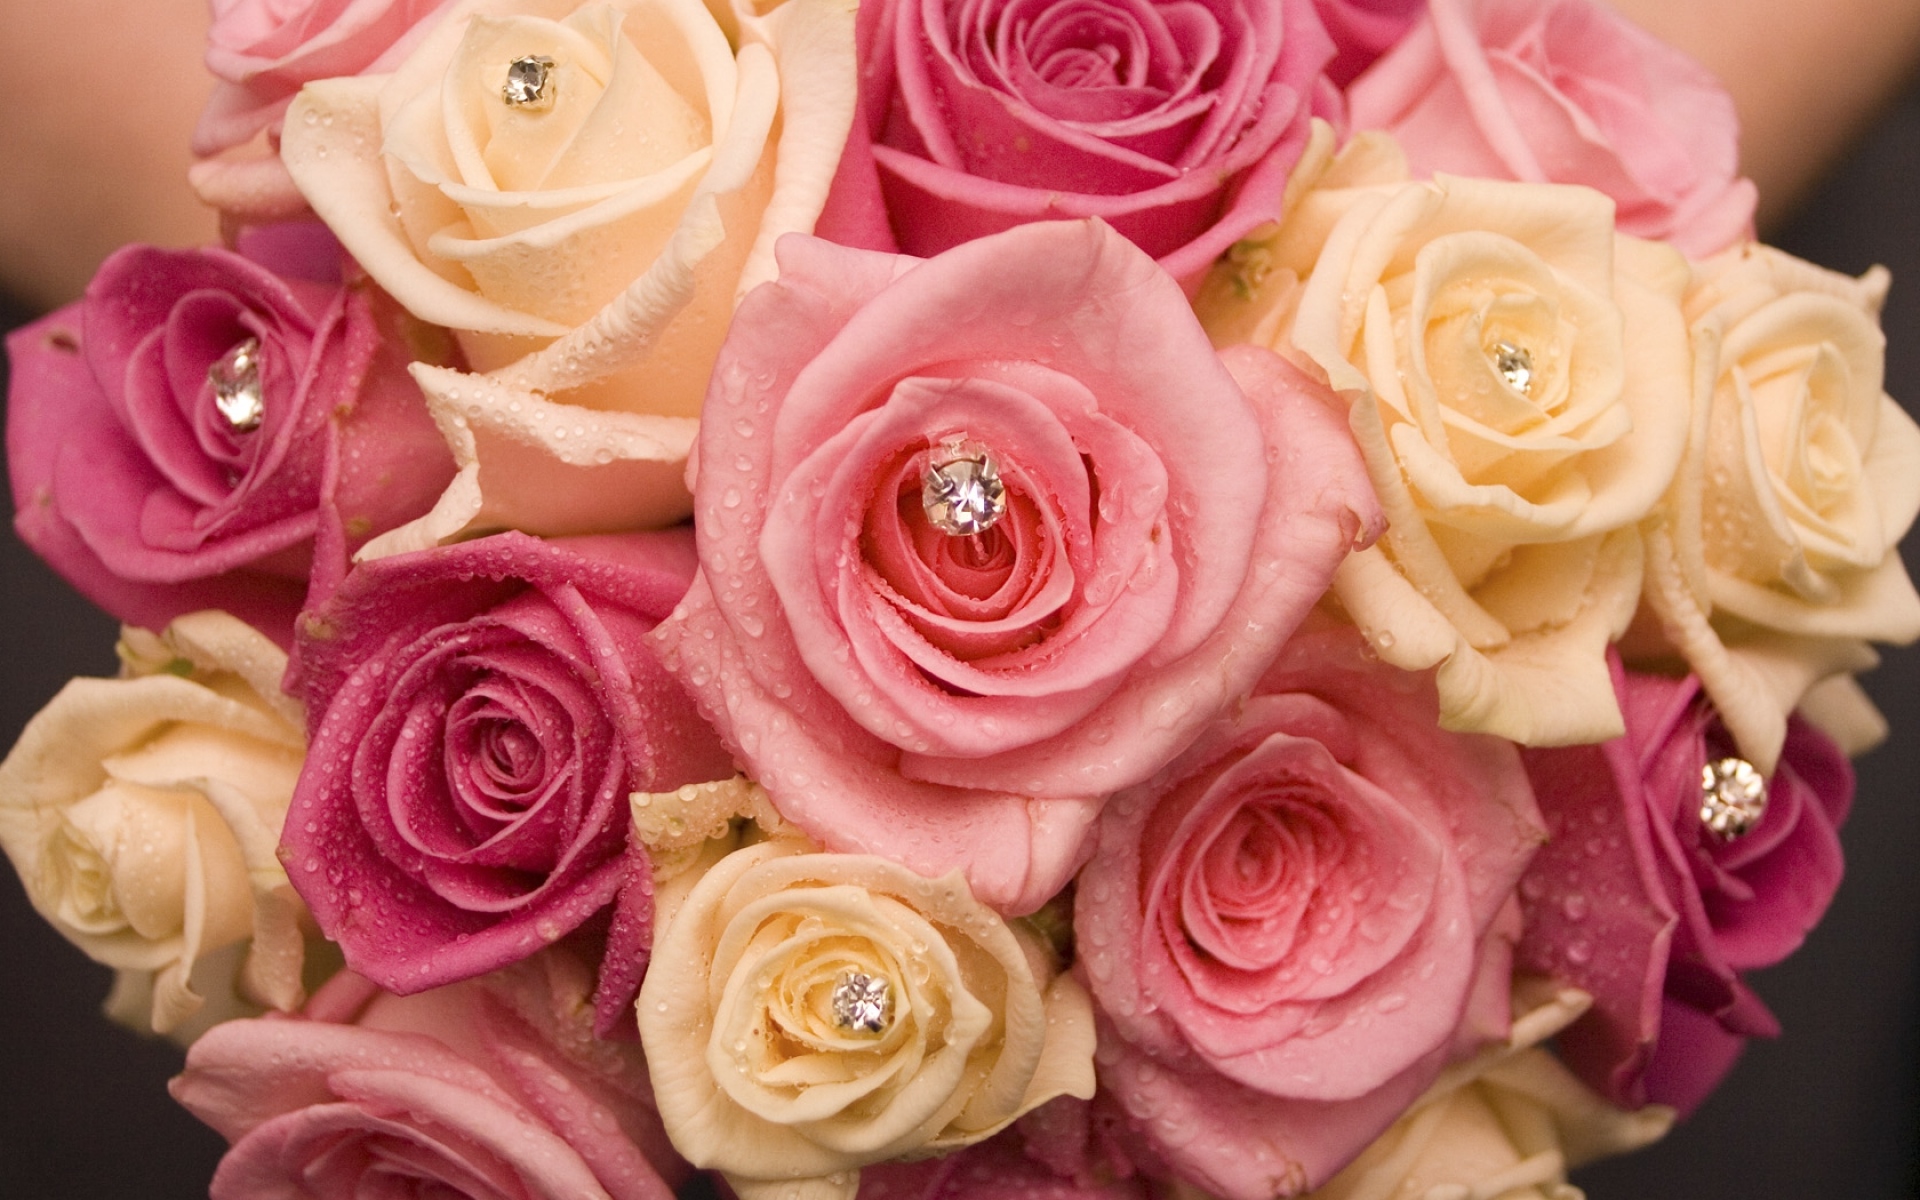 Rose is beautiful. Розовый букет. Красивый букет роз. Букет разных роз. Роскошные розы.